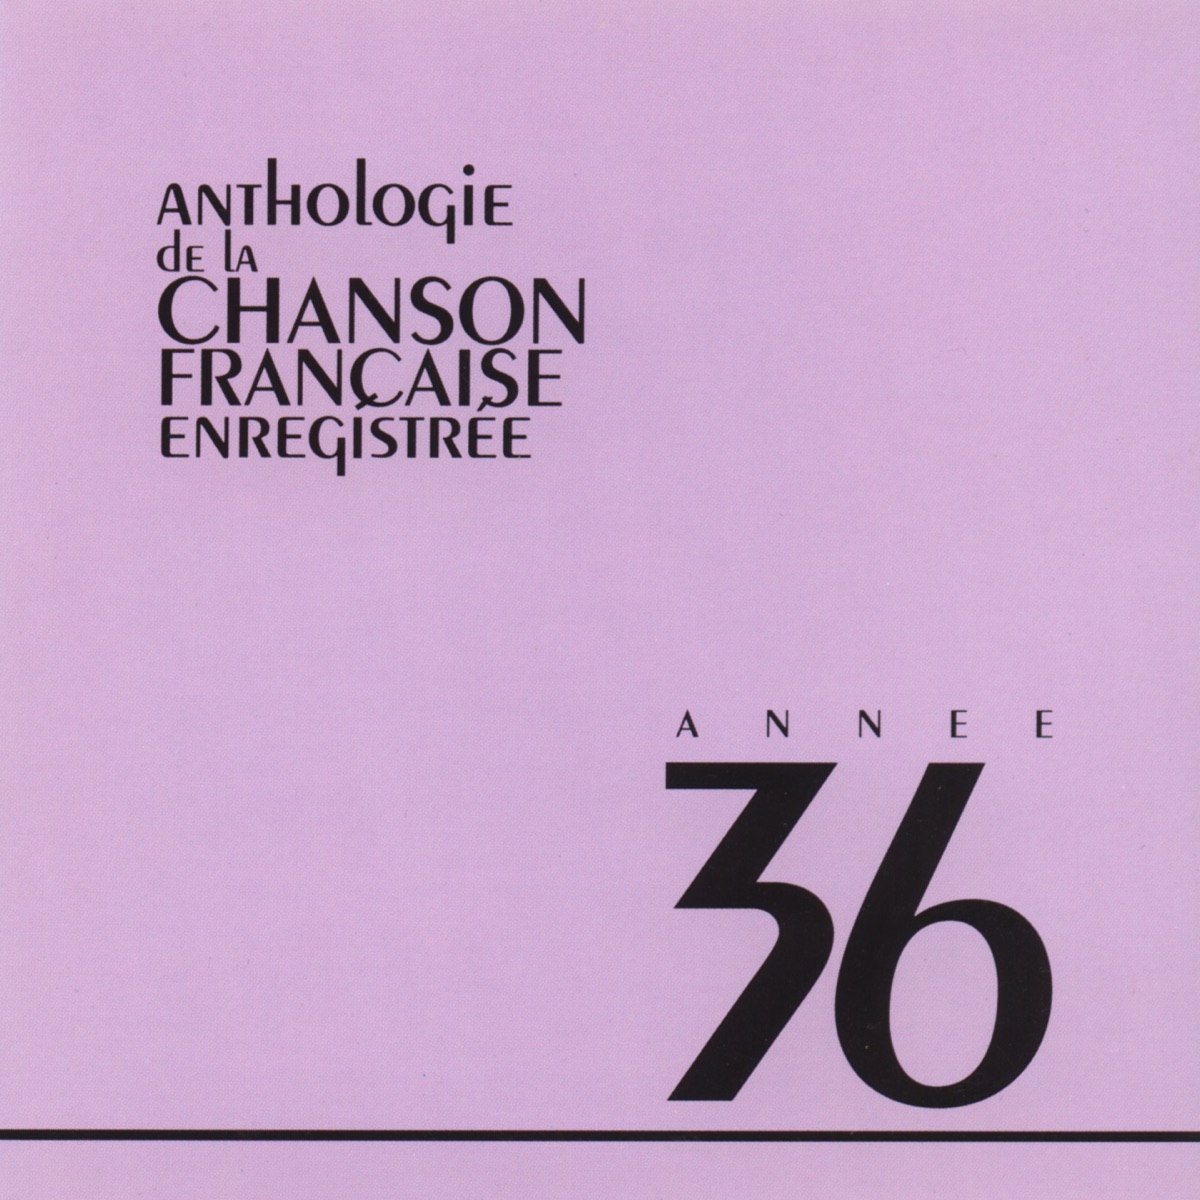 1935-1940 ANTHOLOGIE DE LA CHANSON FRANÇAISE (manufacturer_name